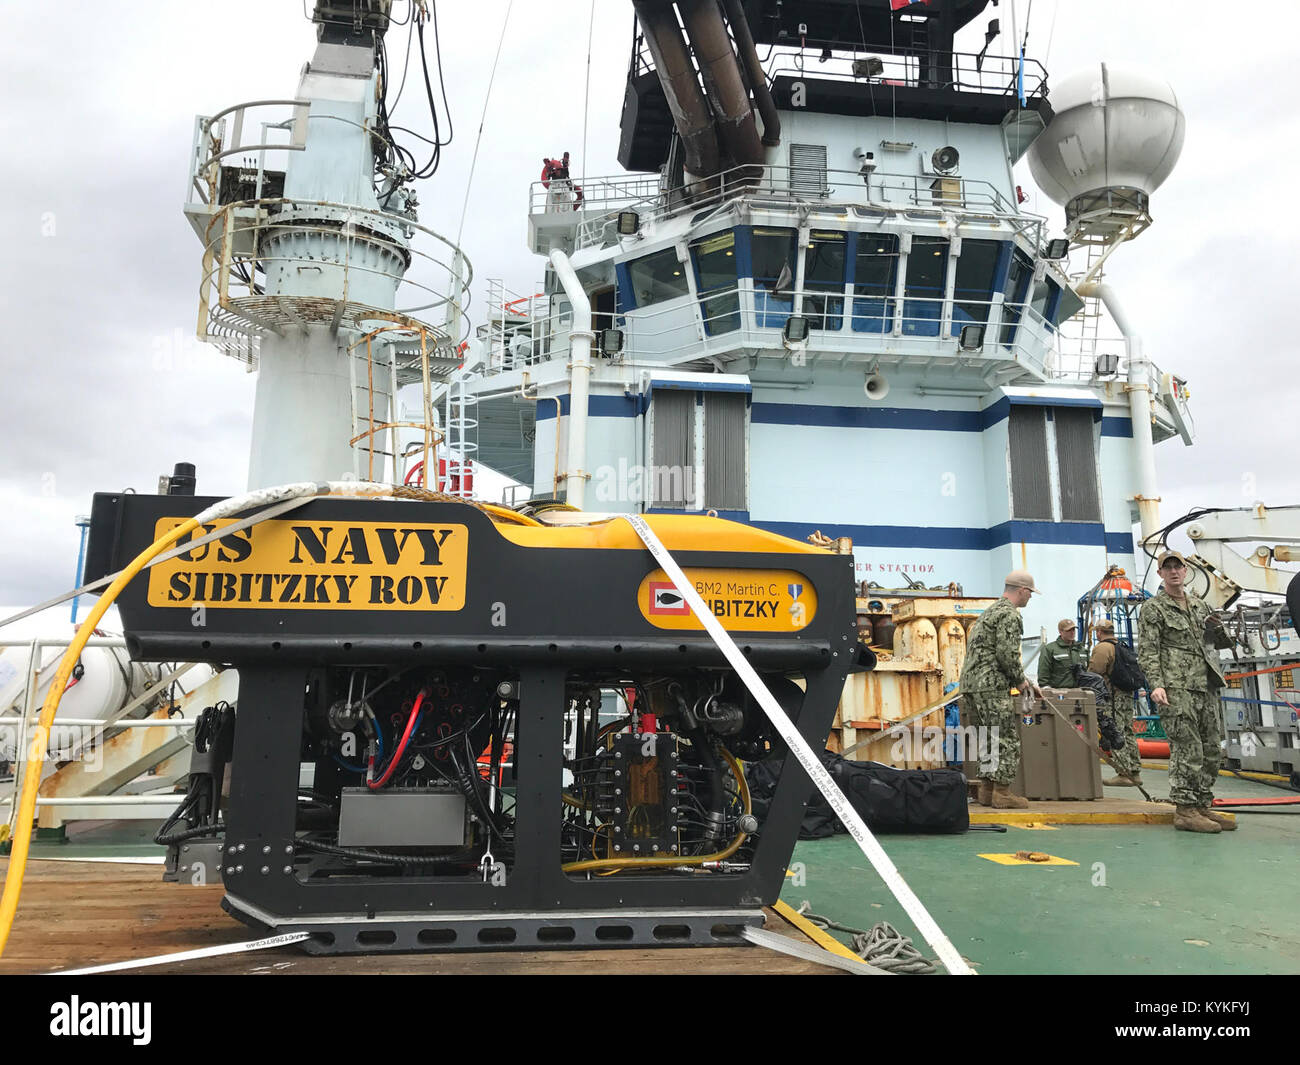 Atlantik (Nov. 21, 2017) eines ferngesteuerten Unterwasserfahrzeugs betrieben von Unterseeischen Rettung der US-Navy-Befehl (URC) ist inszeniert an Bord des Norwegischen Schiffes Skandi Patagonien die ständige Suche nach der Argentinischen Marine u-Boot zur Unterstützung A.R.A. San Juan (S42) in den Atlantischen Ozean. URC Segler sind sehr gut ausgebildet und regelmäßig üben den Einsatz der Advanced Technology in U-Boot rescue Szenarien. (U.S. Marine Foto/Freigegeben) 171121-N-TY 130-005 Stockfoto